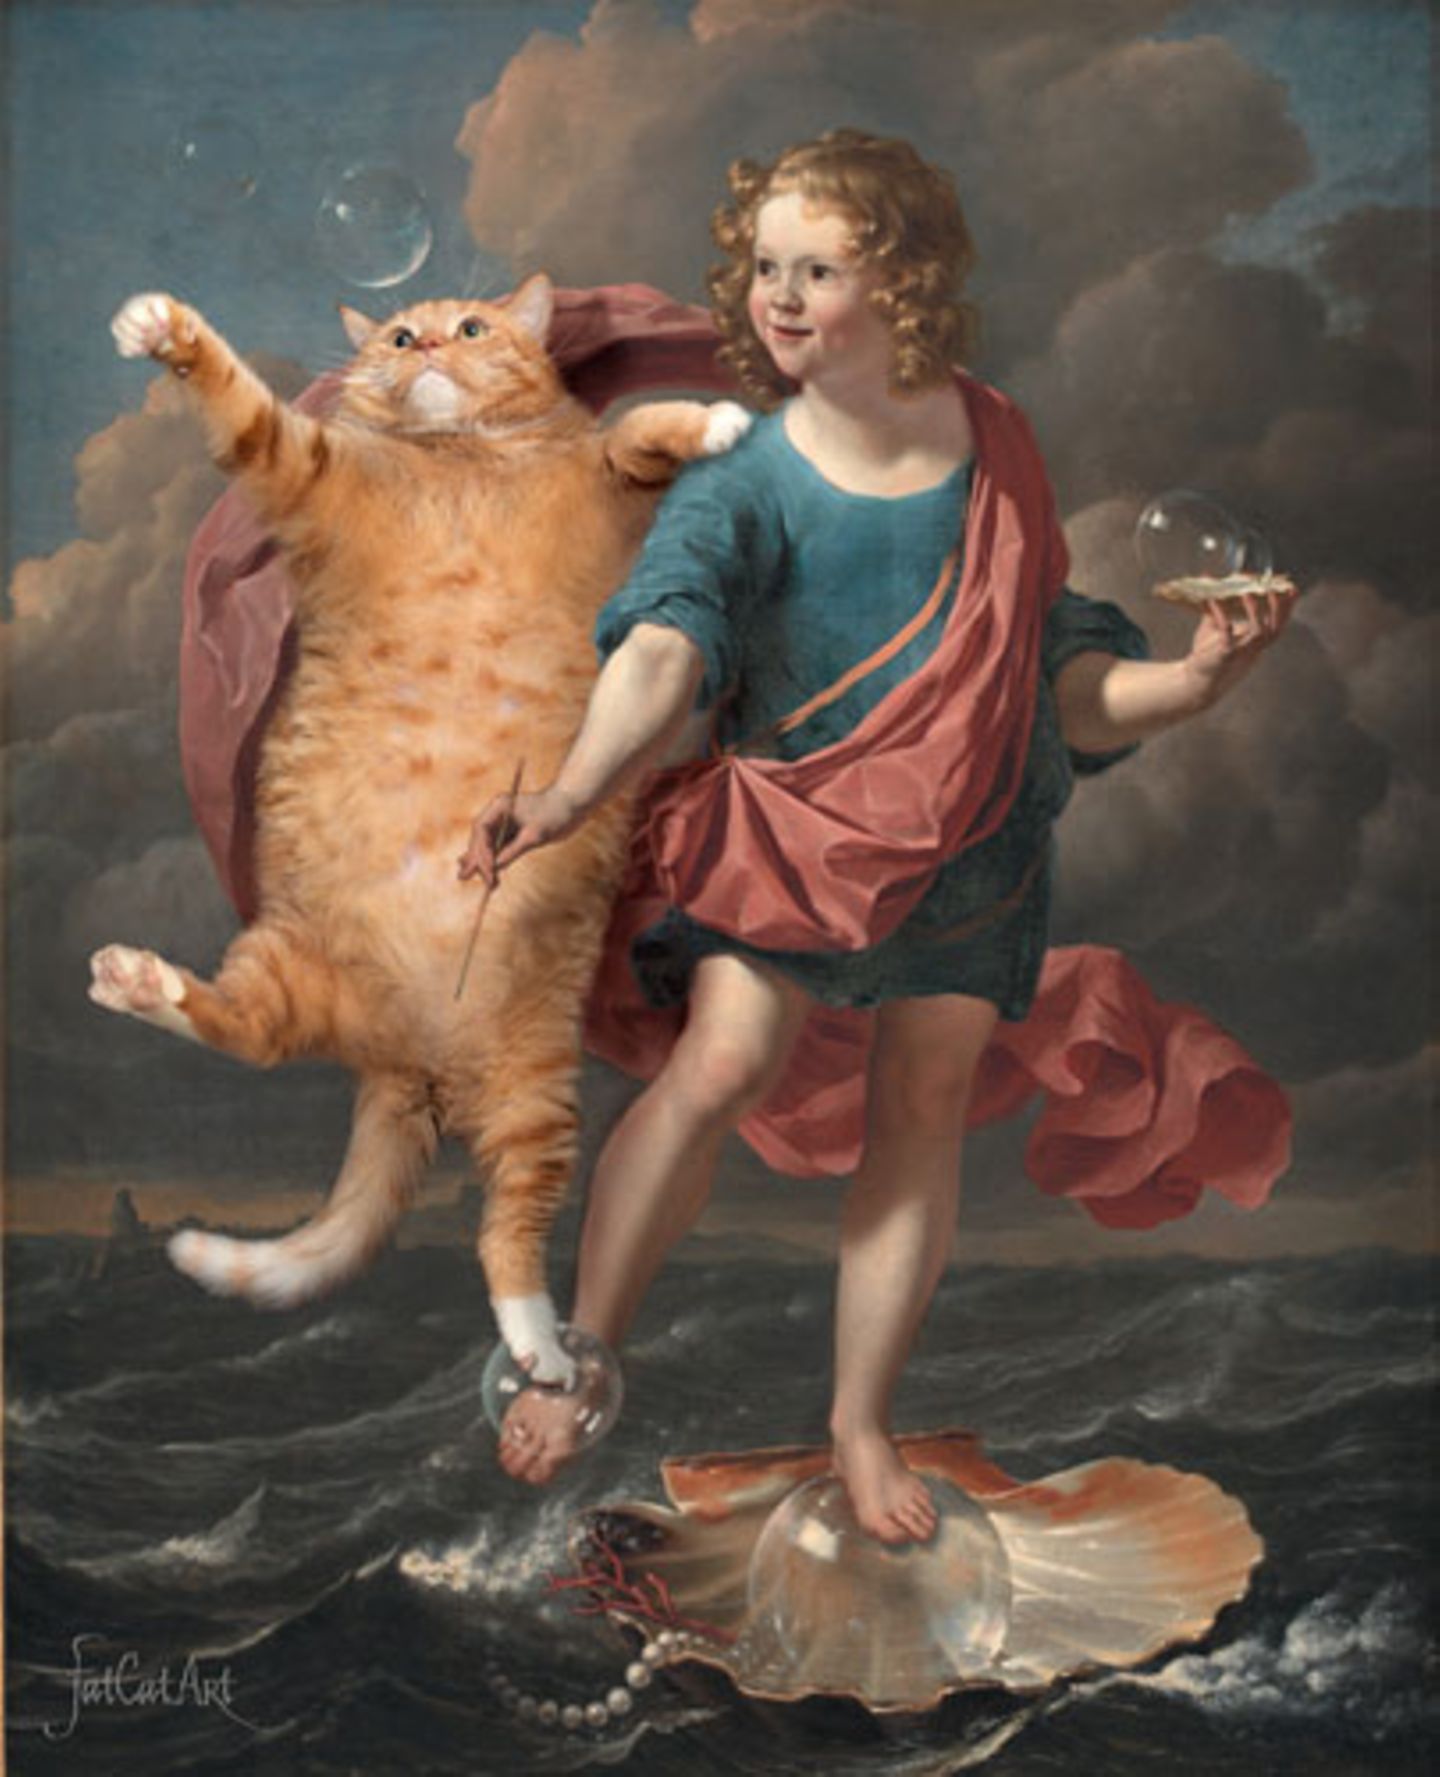 Ach, und überhaupt: So viele Seifenblasen in ein Gemälde zu tun, und keine einzige Katze danebenzumalen war total egoistisch.